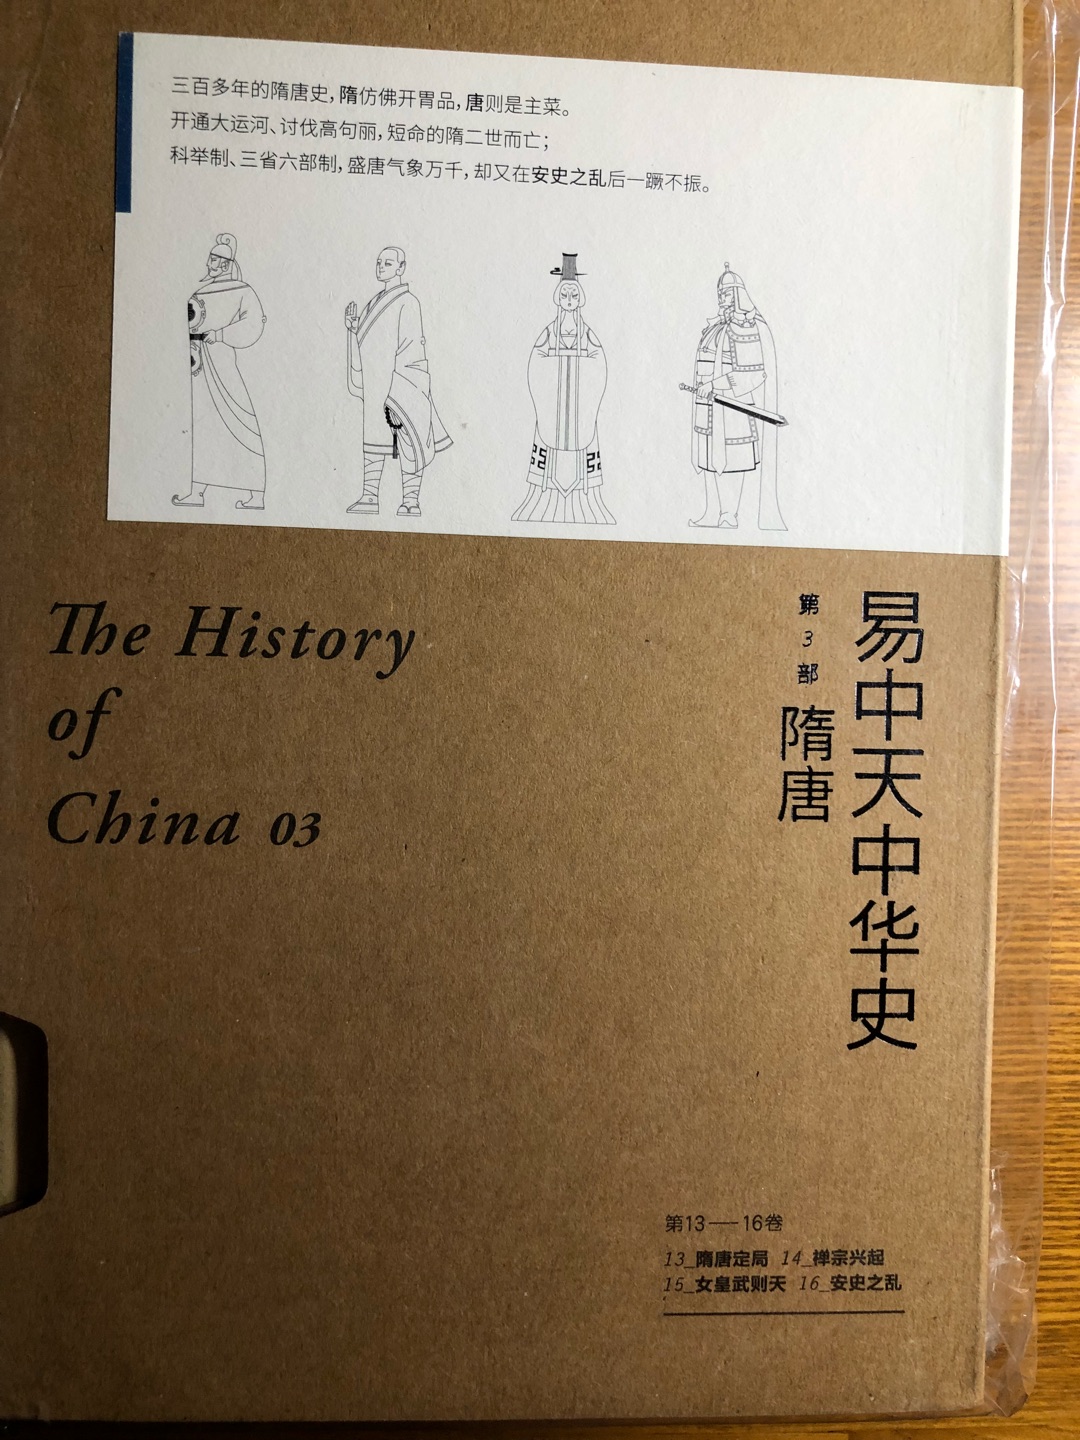 很喜欢易中天老师讲述的中华史，听他旁征博引，娓娓道来真是一种享受。书的装帧印刷都很精美，值得收藏和慢慢品味。